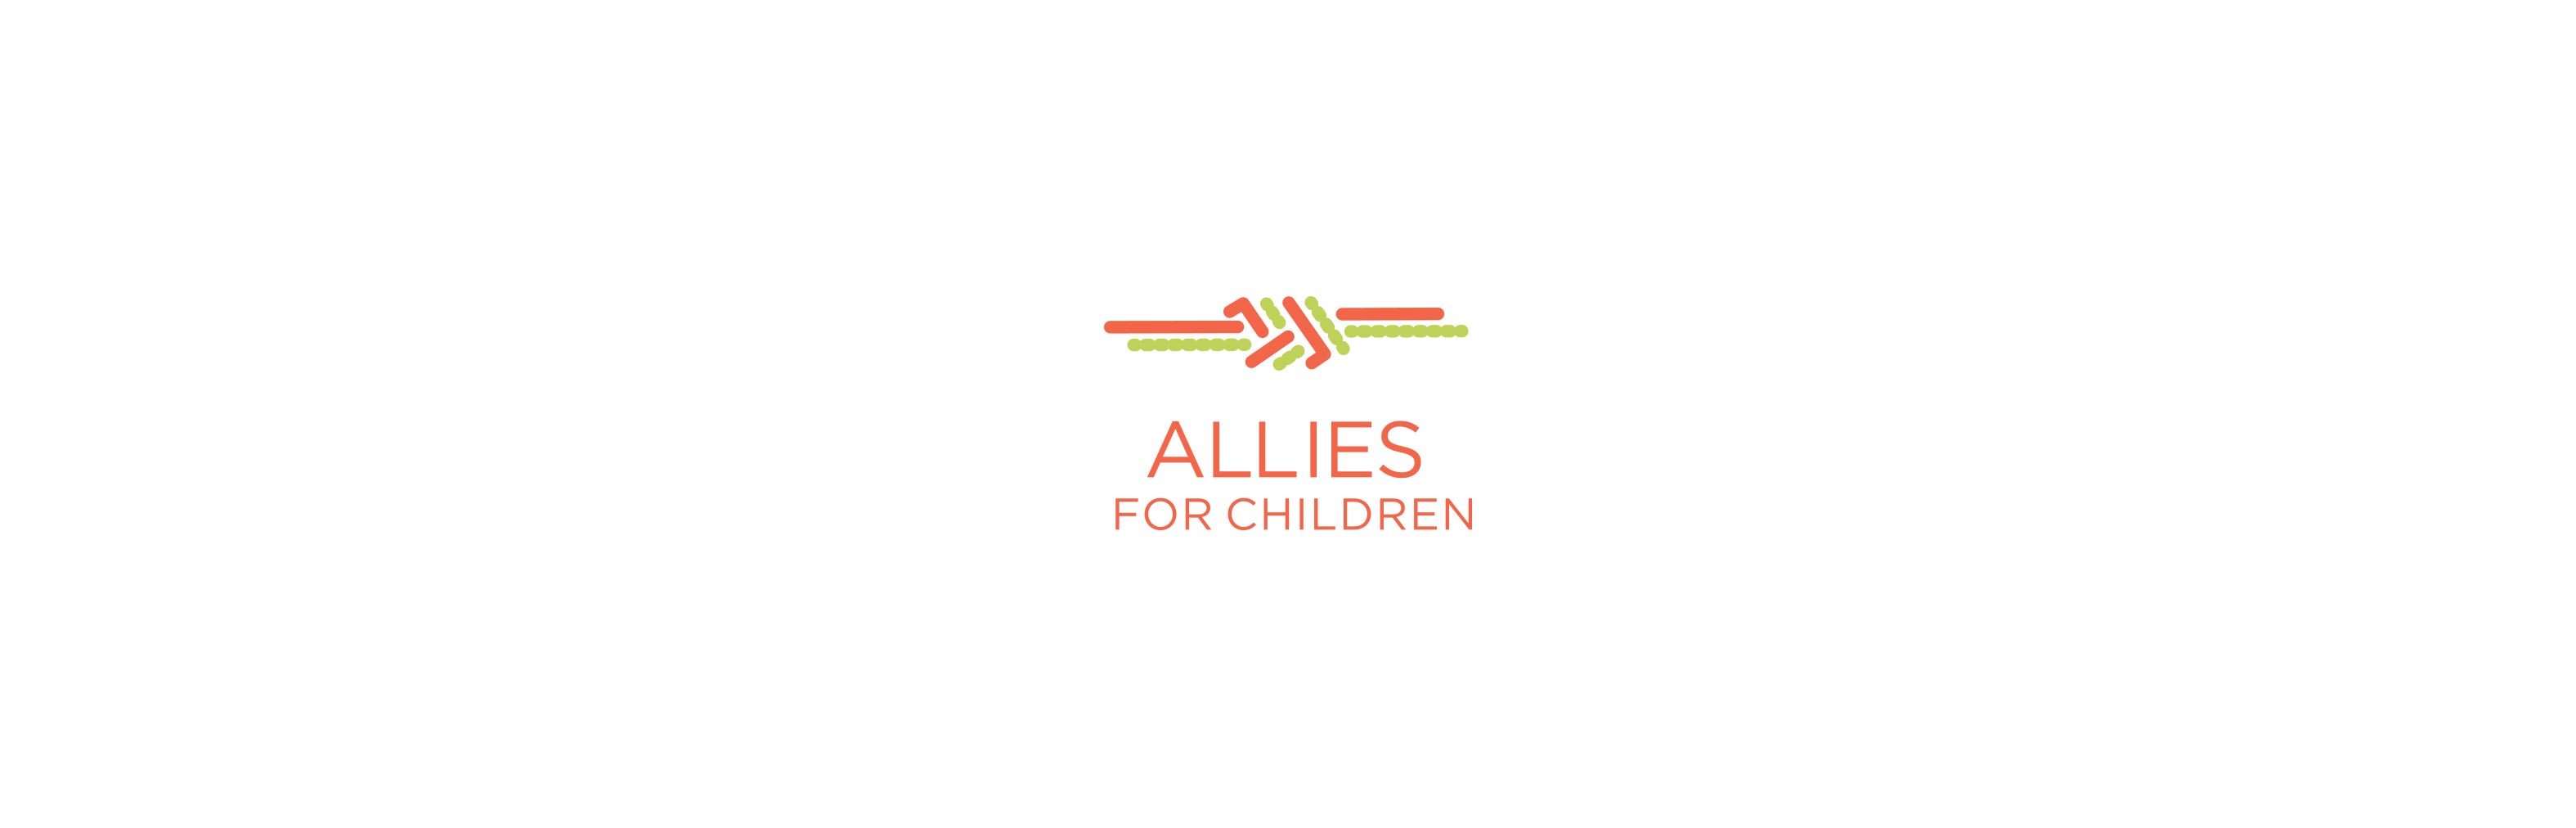 Allies for Children logo